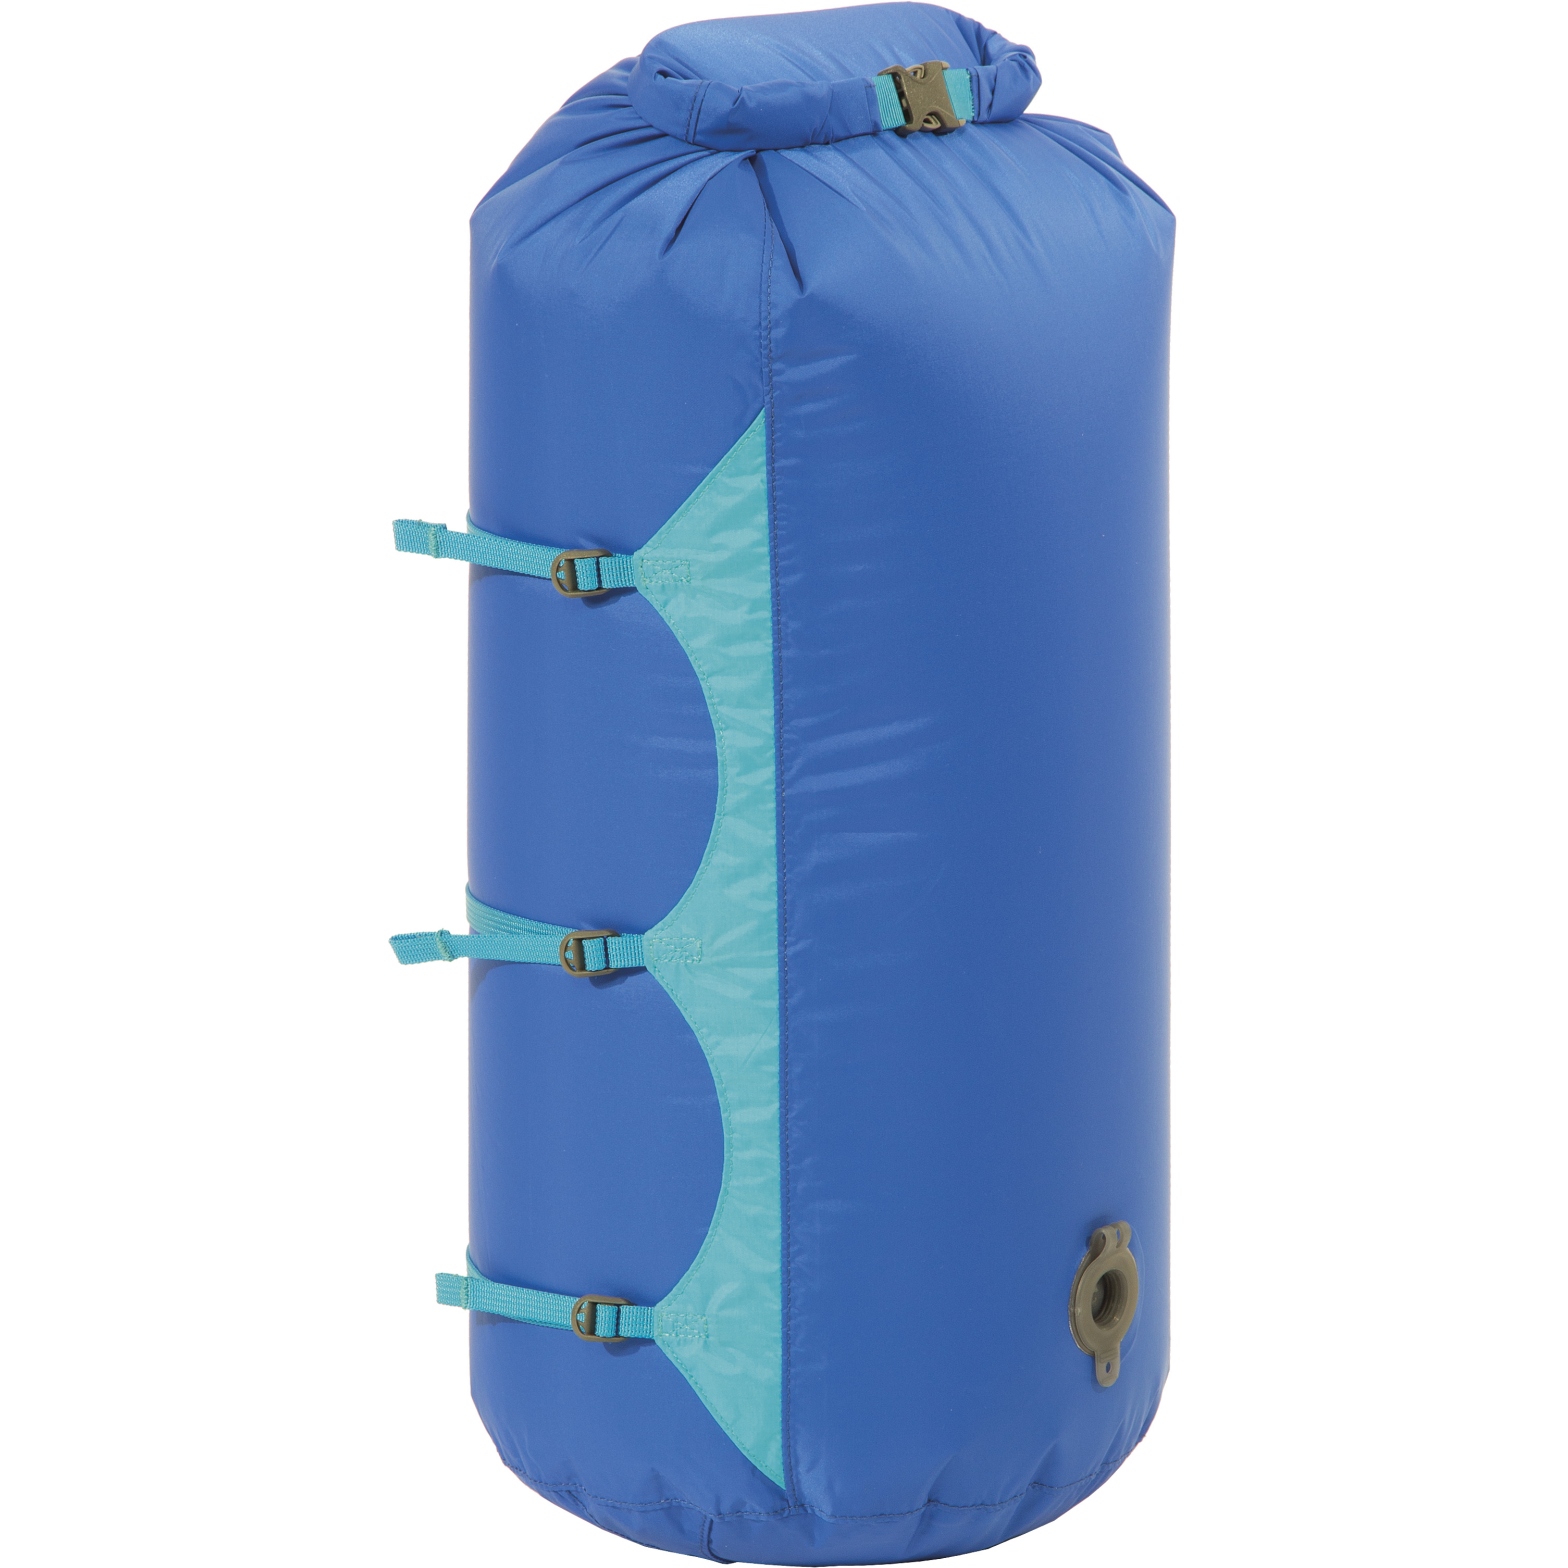 Produktbild von Exped Waterproof Compression Bag - Packsack - M - blau